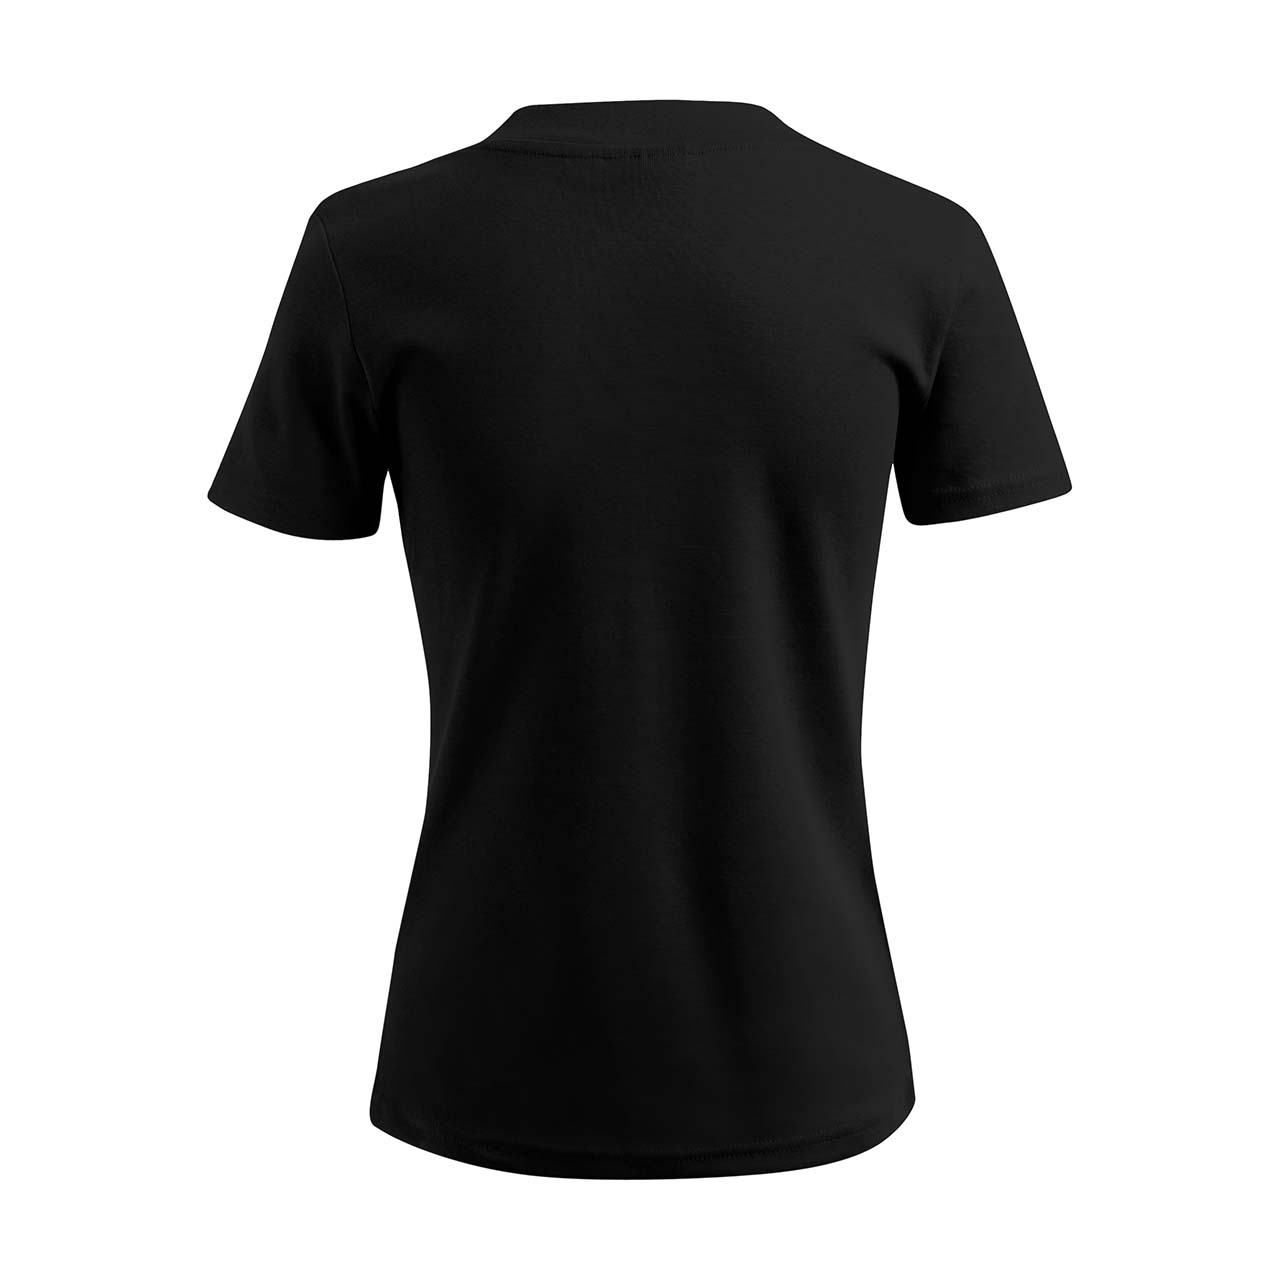 Damen T-Shirt mit V-Ausschnitt   - Kölle - Strass